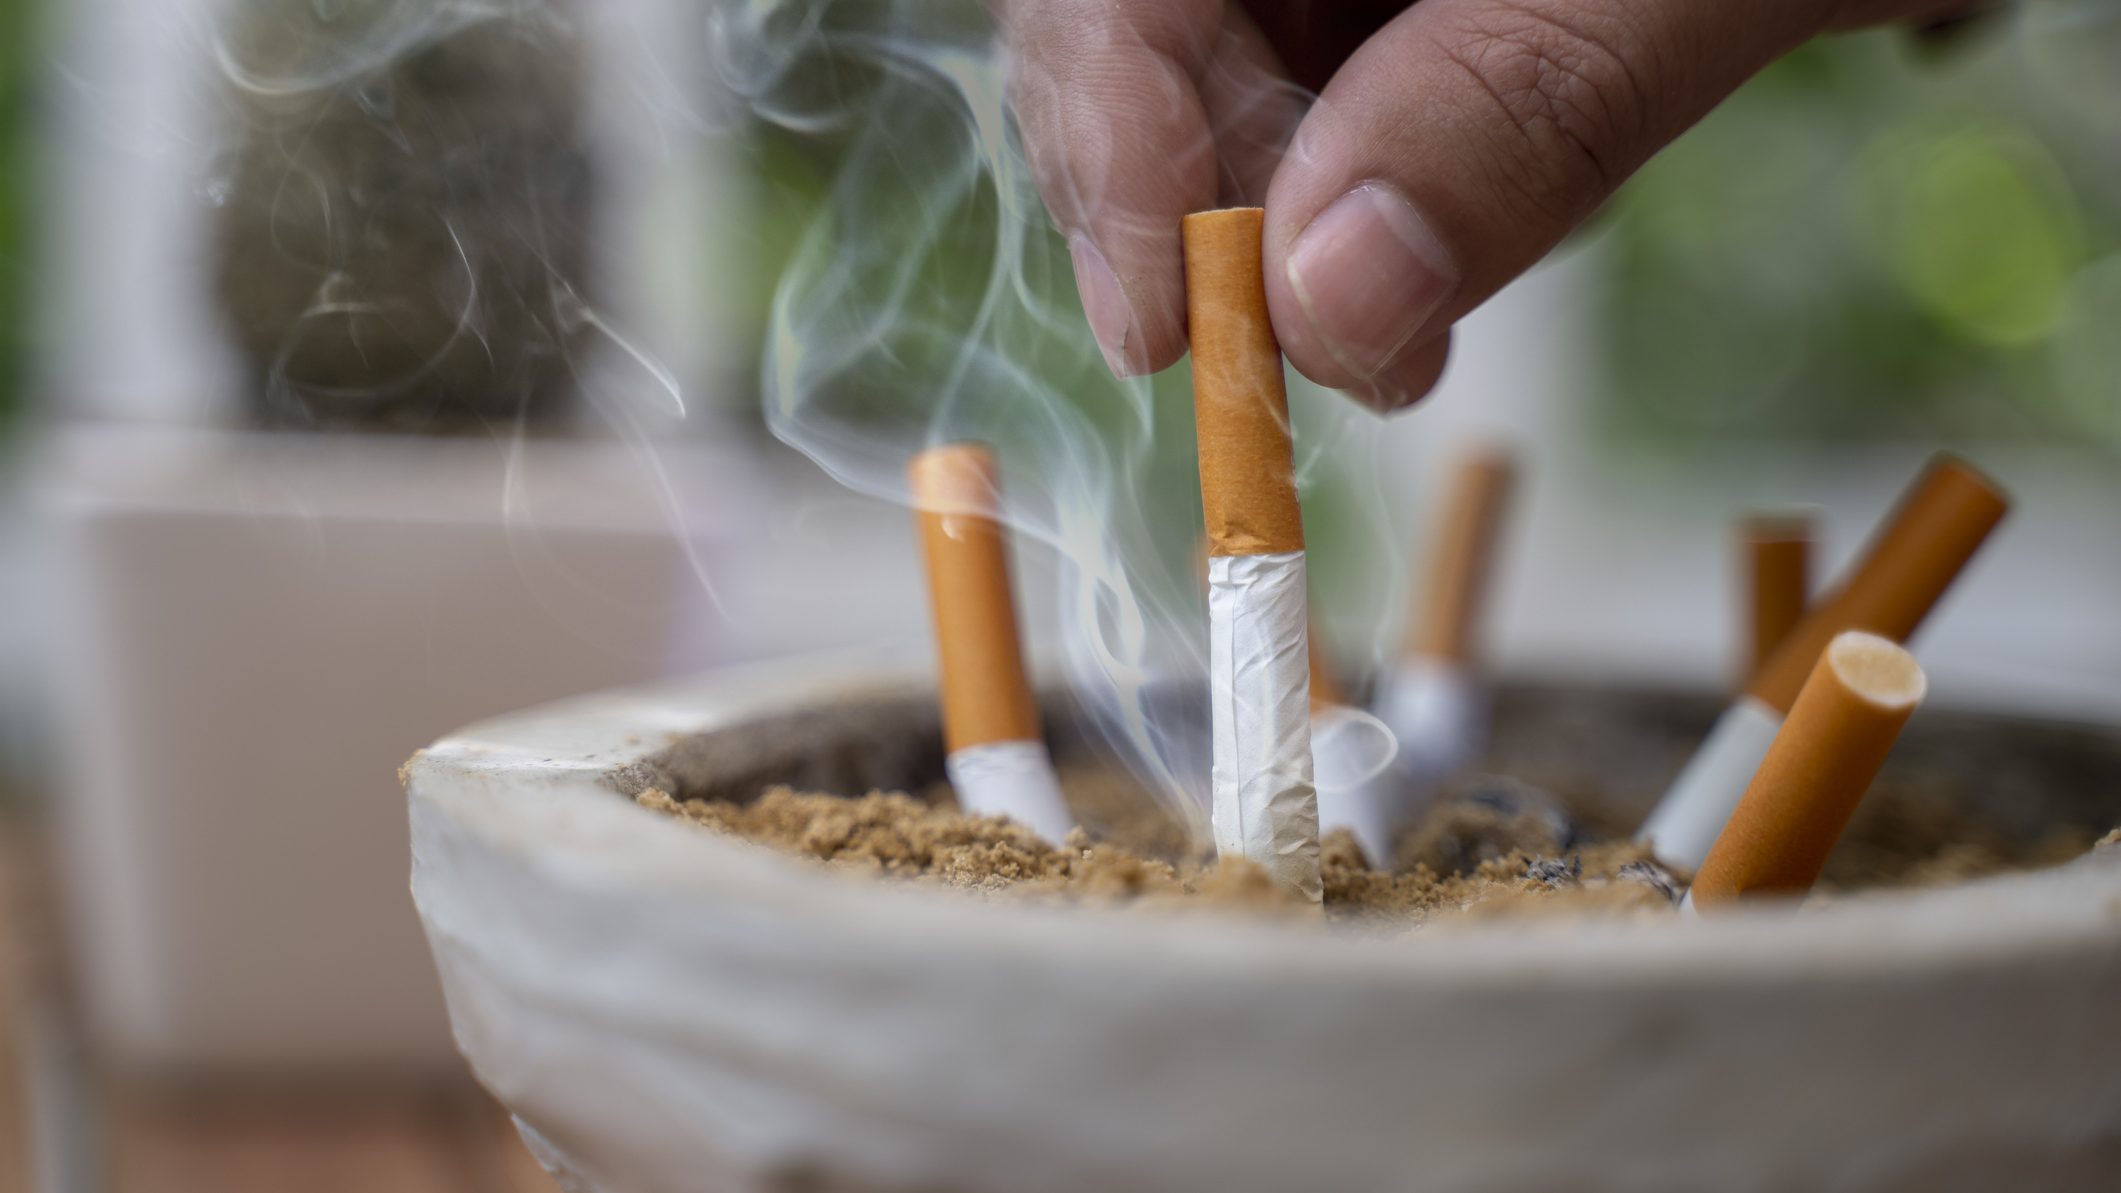 dohányzás kódolás vélemények fórum a dohányzásról való leszokás amerikai módja